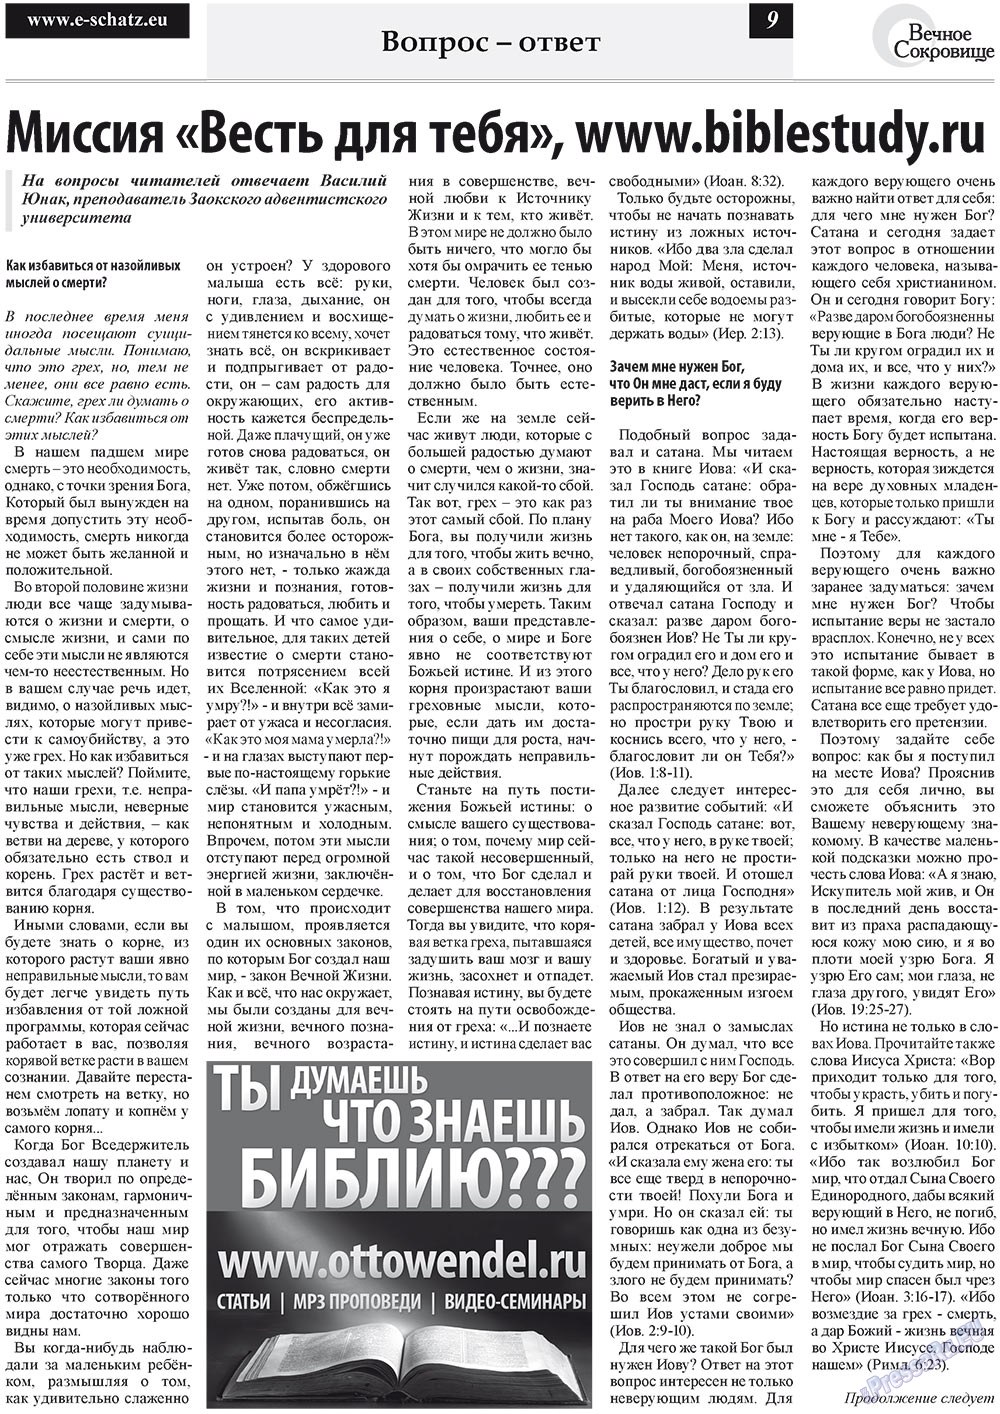 Вечное сокровище (газета). 2011 год, номер 5, стр. 9